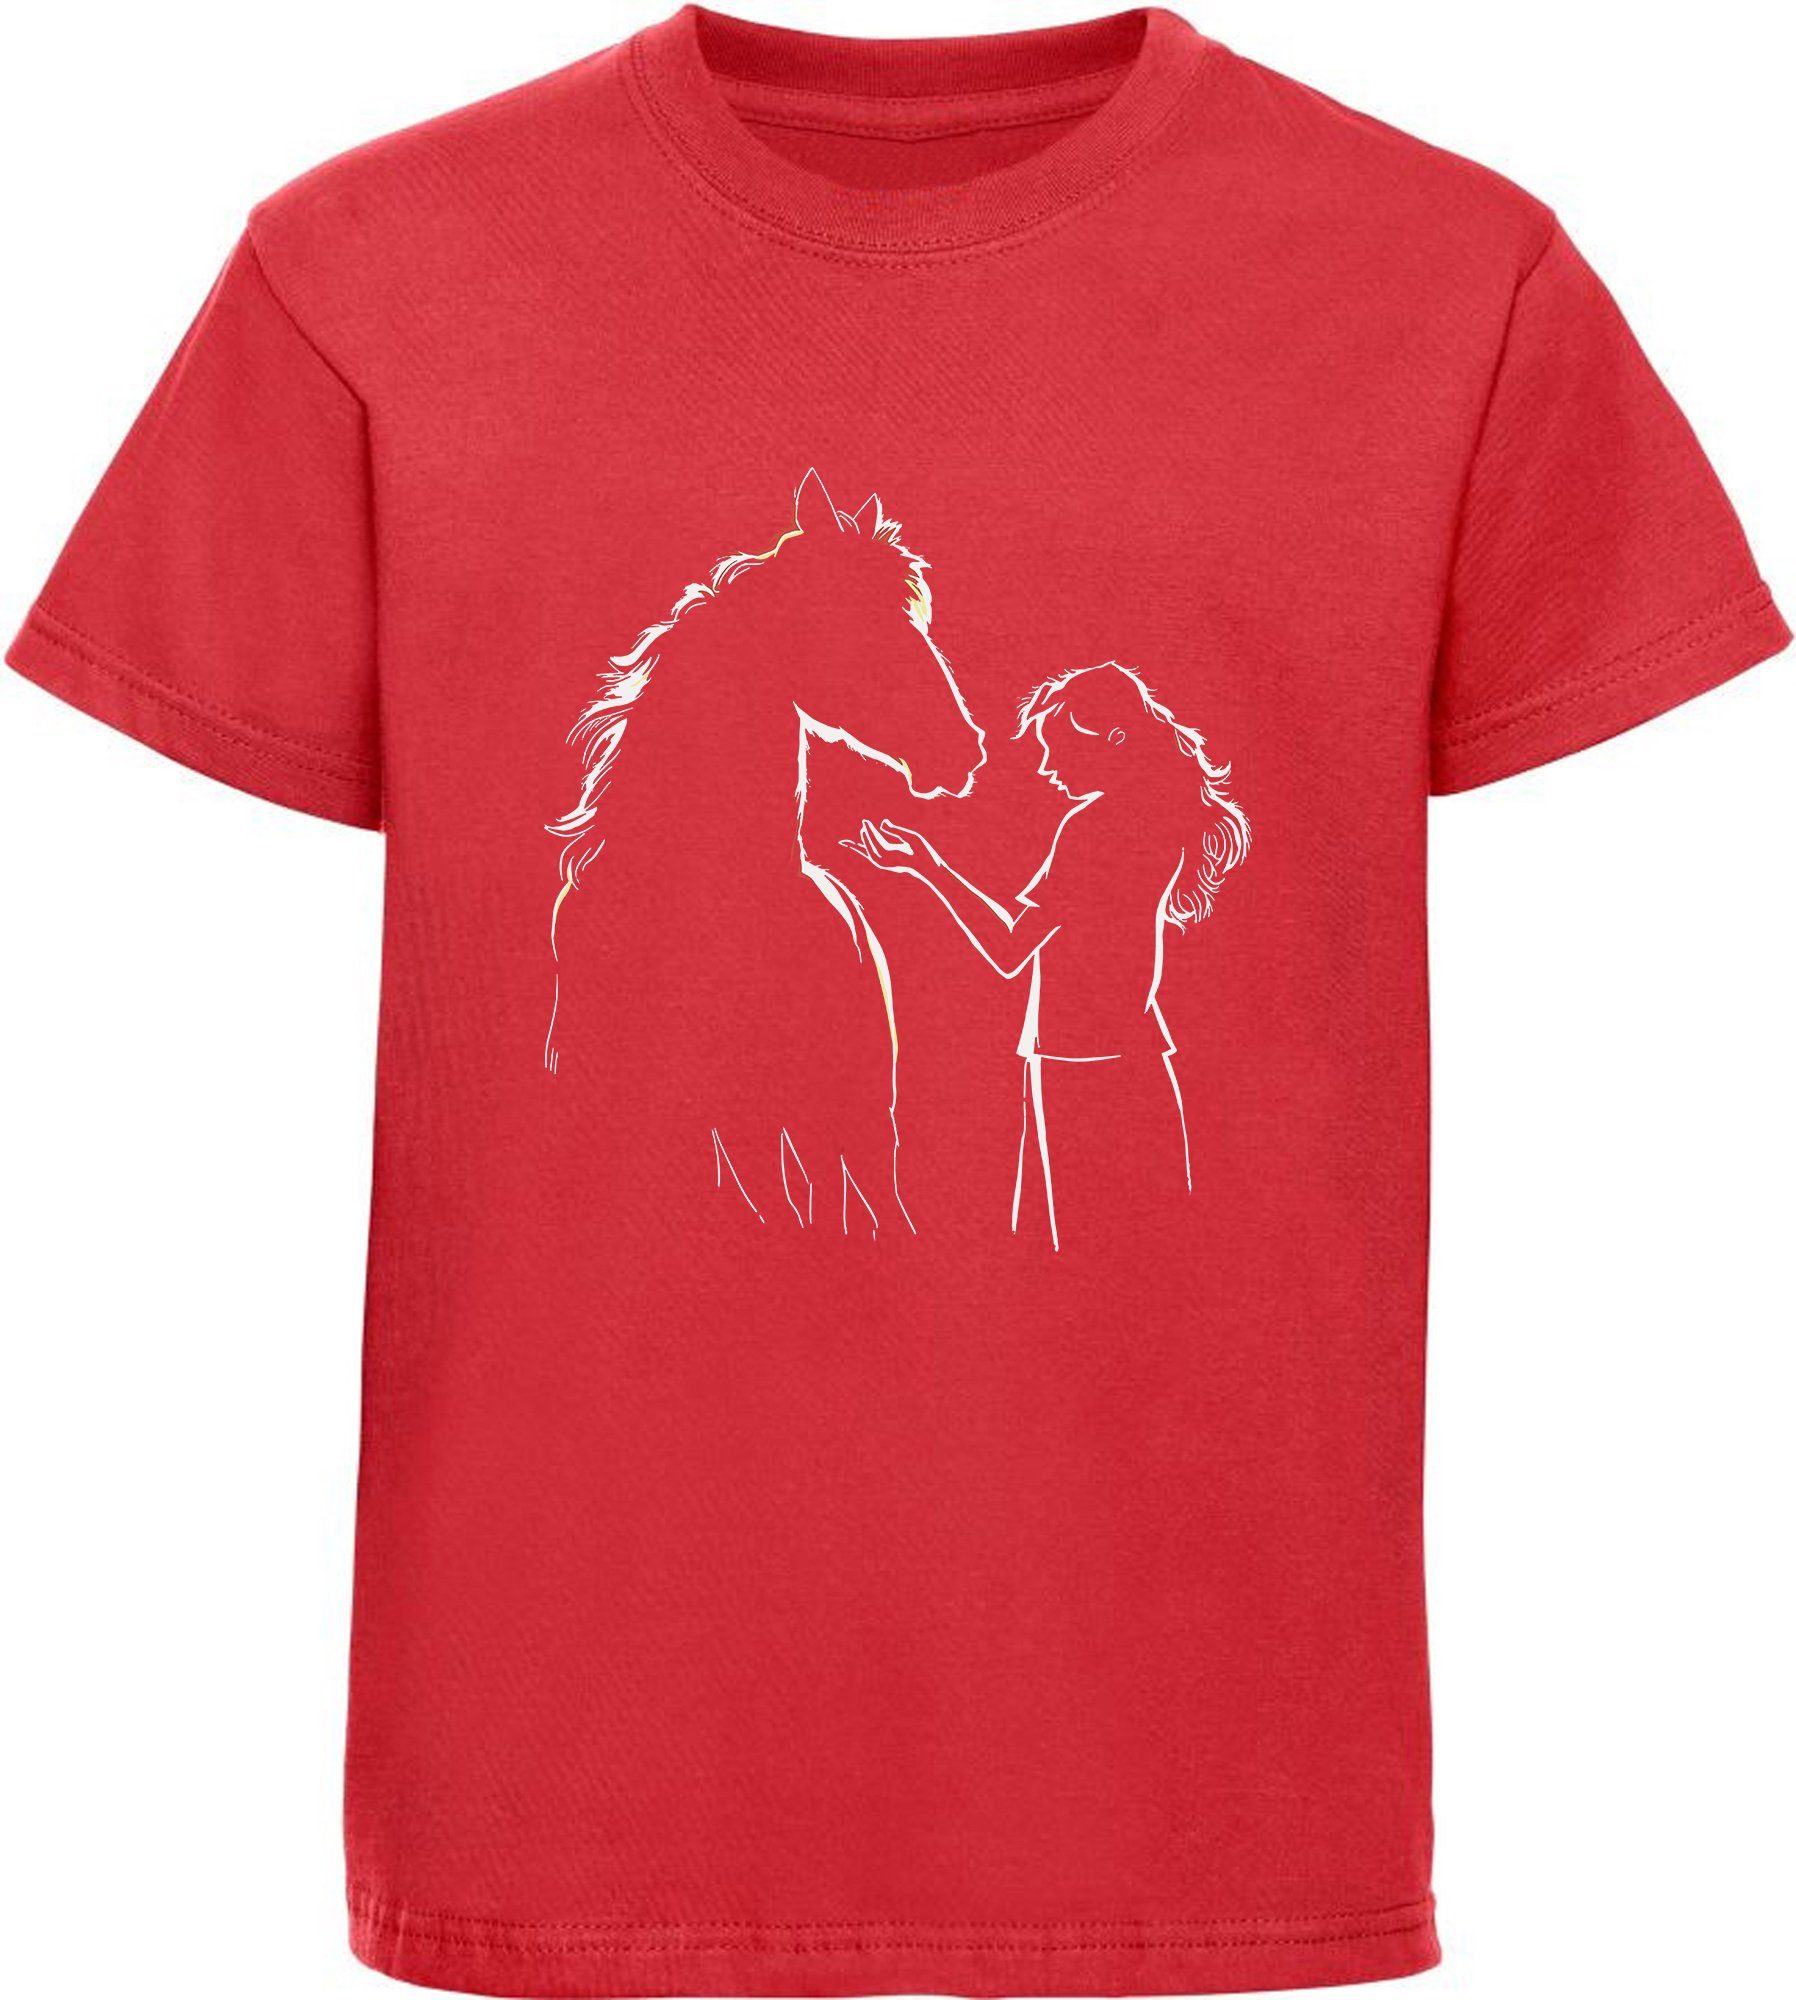 MyDesign24 Print-Shirt bedrucktes rot T-Shirt Mädchen Baumwollshirt i139 Silhouette Aufdruck, mit Pferde Frau mit